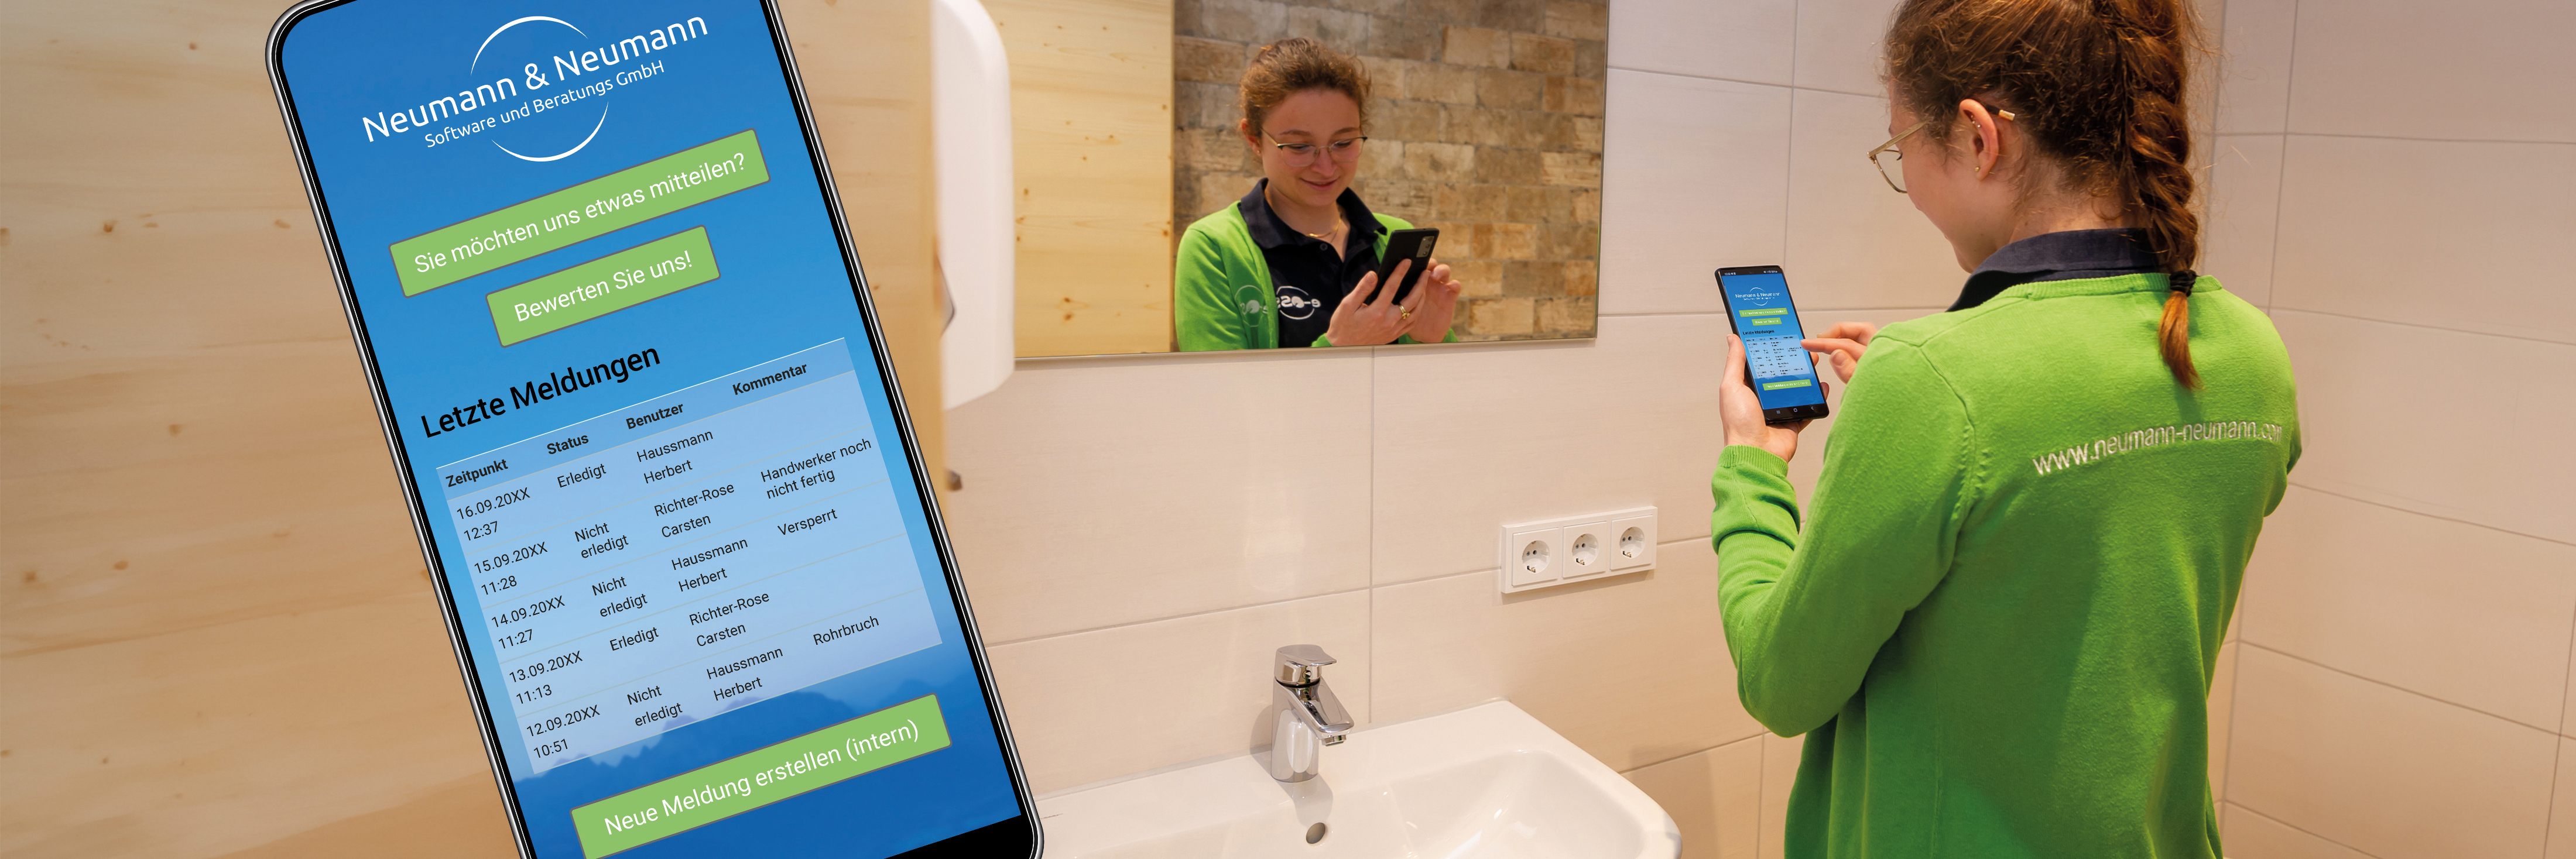 Eine Reinigungskraft in grüner Arbeitskleidung mit der Aufschrift "www.neumann-neumann.com" steht in einem Sanitärraum vor dem Waschbecken und blickt in ein Smartphone, das sie in der Hand hält. Im Vordergrund ist ein Smartphone in der Nahansicht abgebildet, auf dem ein Bildschirm der e-QSS-App zu sehen ist.